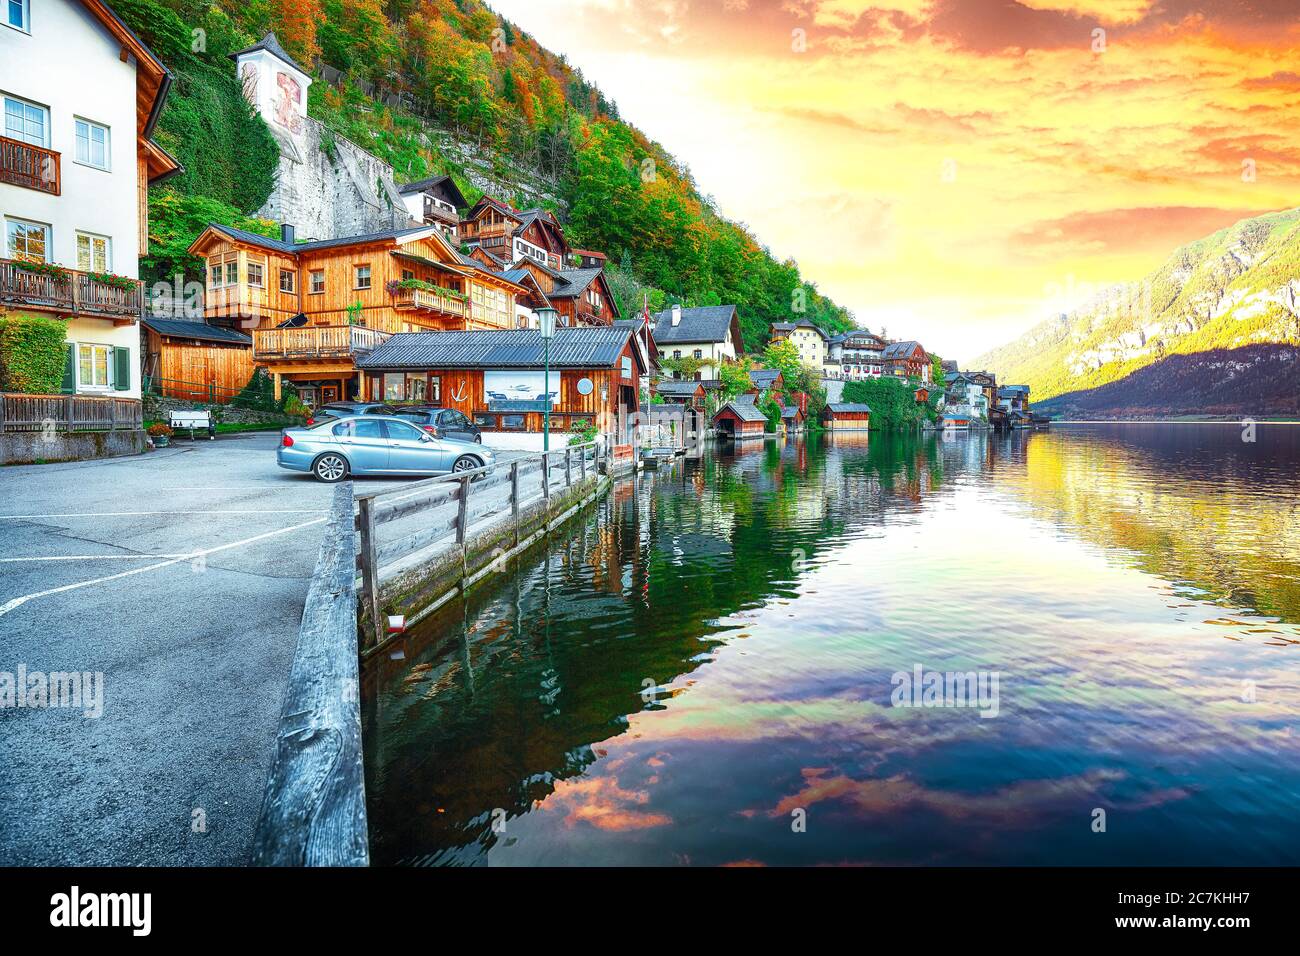 Coucher de soleil automnal de la célèbre ville de Hallstatt au bord du lac, qui se reflète dans le lac de Hallstattersee. Emplacement: resort village Hallstatt, région de Salzkammergut, Autriche Banque D'Images